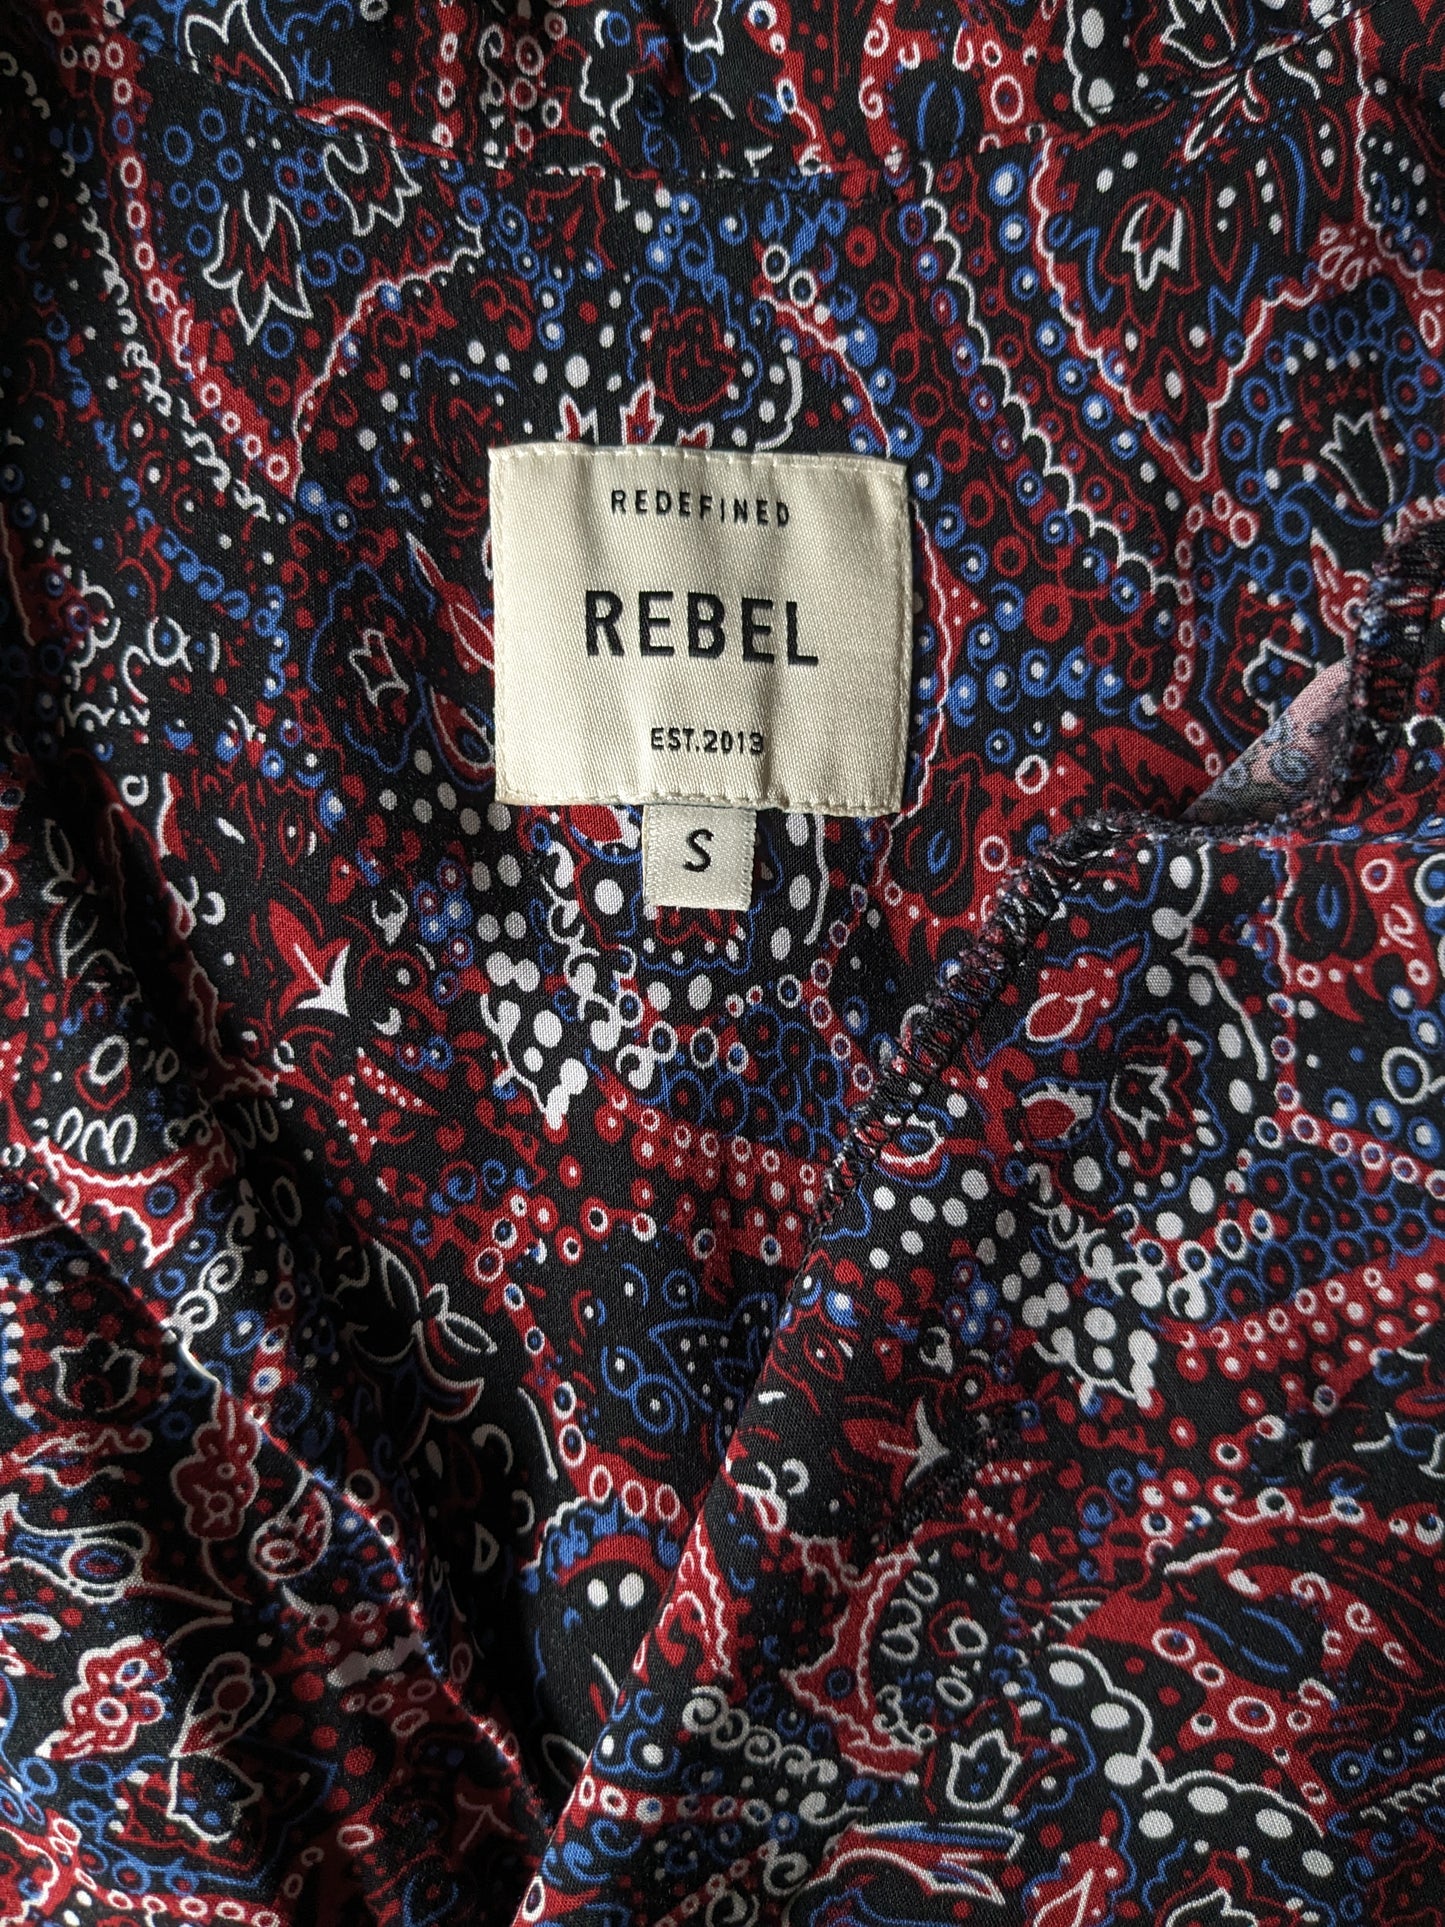 Rebel print overhemd korte mouw. Rood blauw zwarte print. Maat S / M.